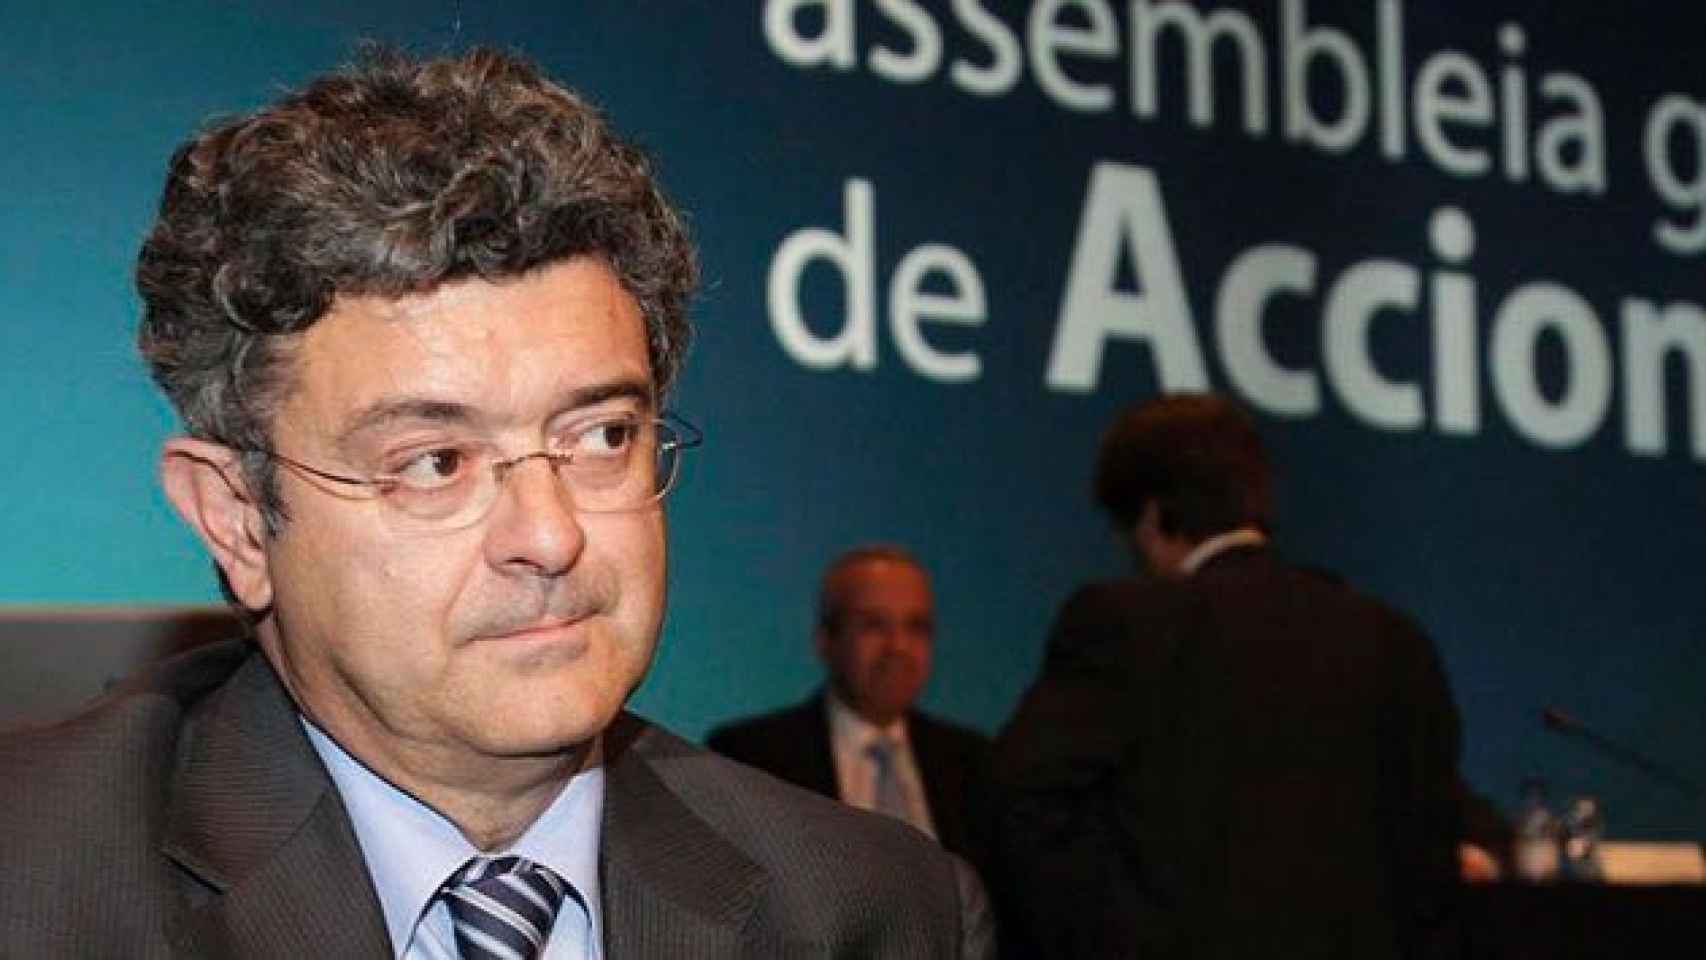 El exdirector general de Estrategia de Telefónica, Santiago Fernández Valbuena, en una imagen de archivo